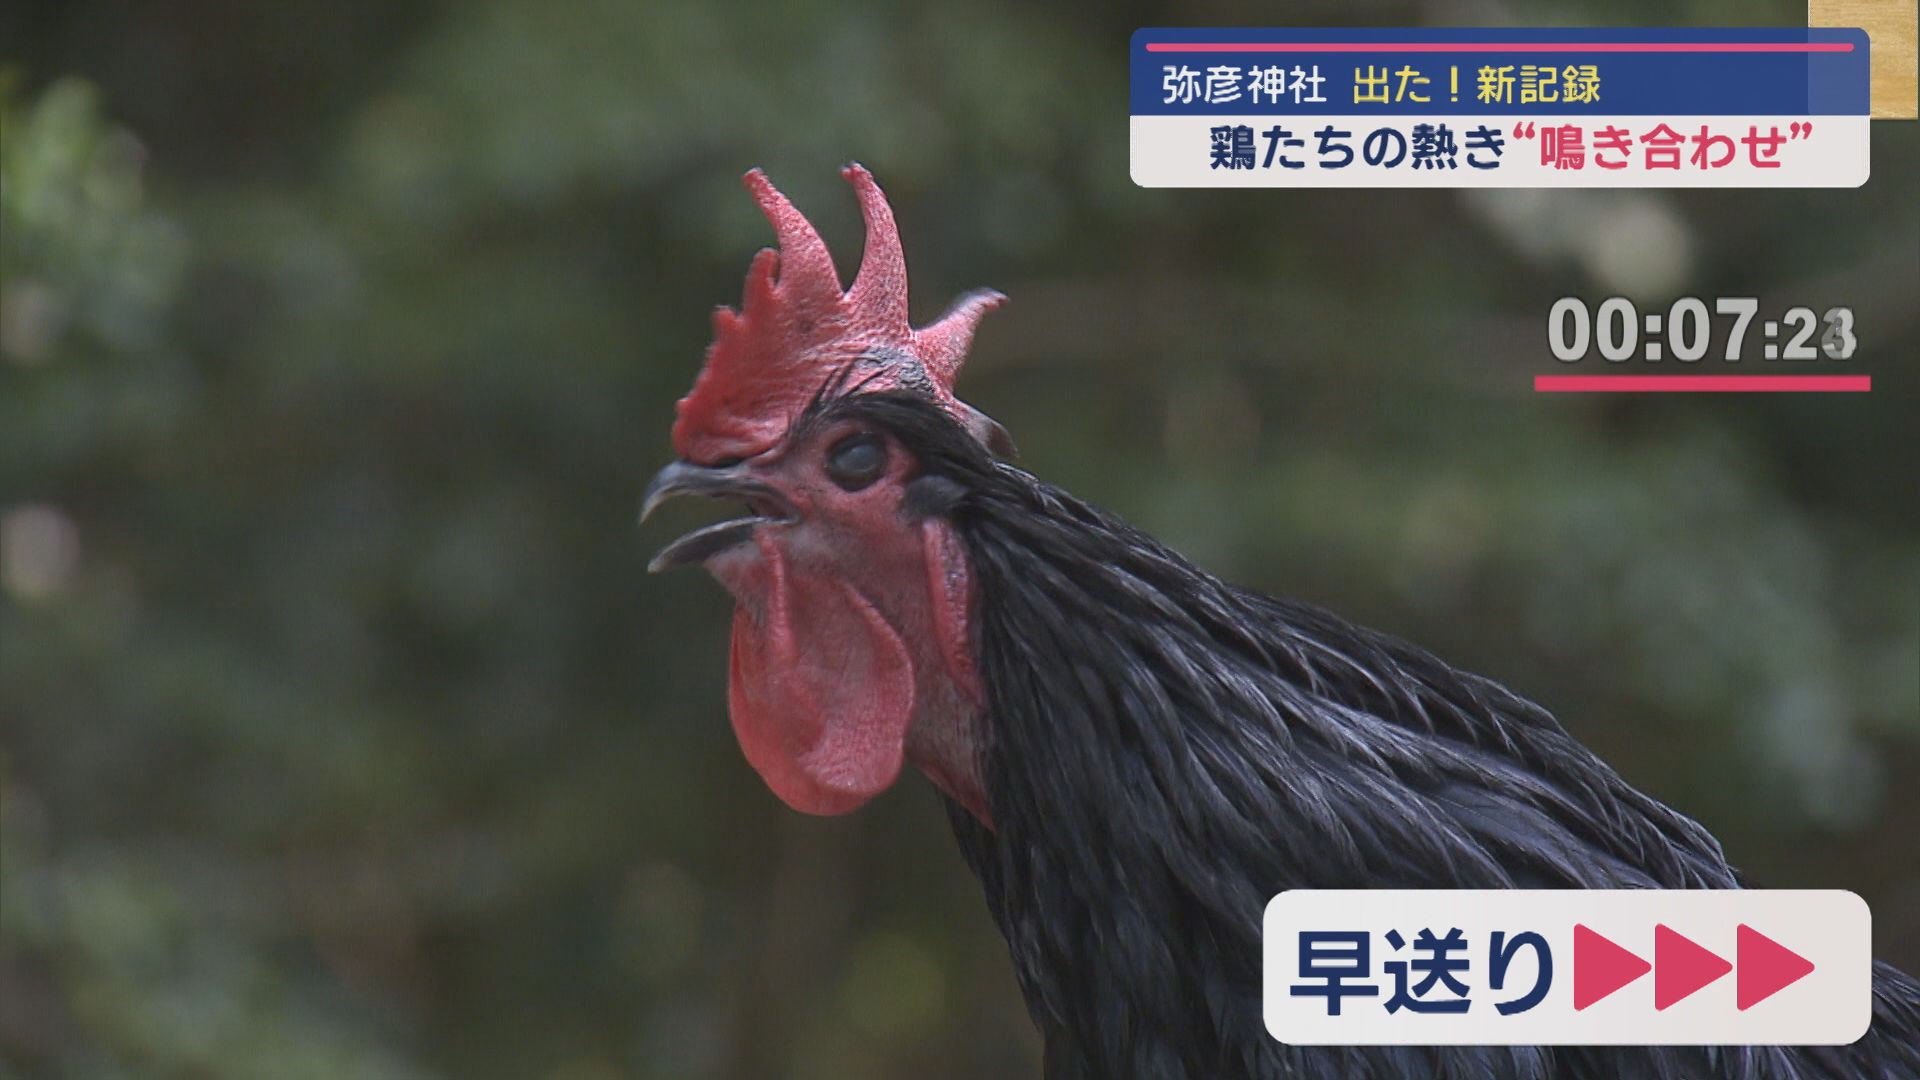 【GWスケッチ】弥彦神社 恒例の長鳴鶏の鳴き合わせ会 28秒12の新記録【新潟】